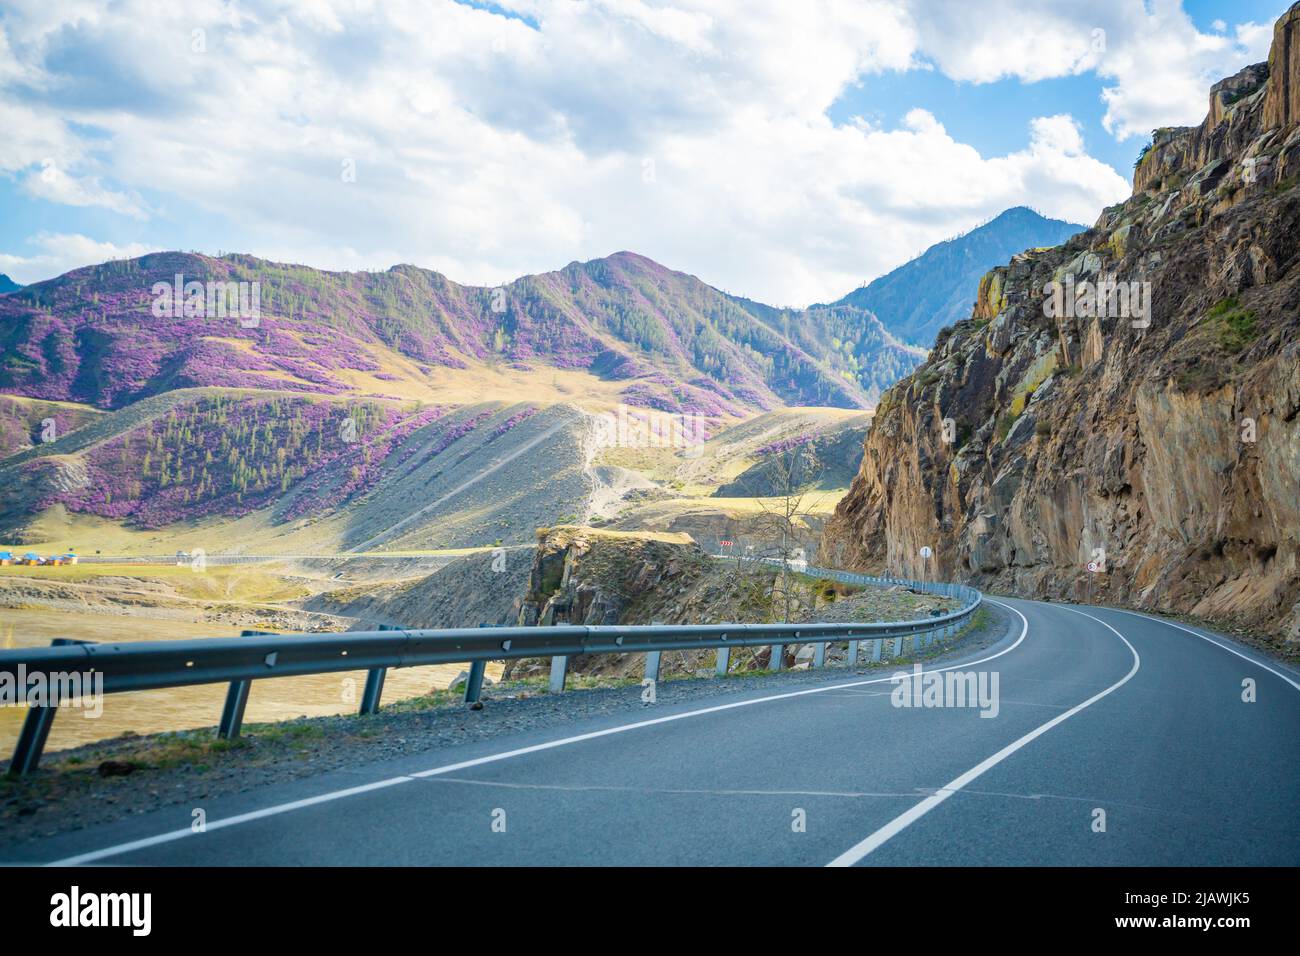 Chuysky Trakt ist Bergstraße mit schöner Aussicht in Altai, Russland Stockfoto